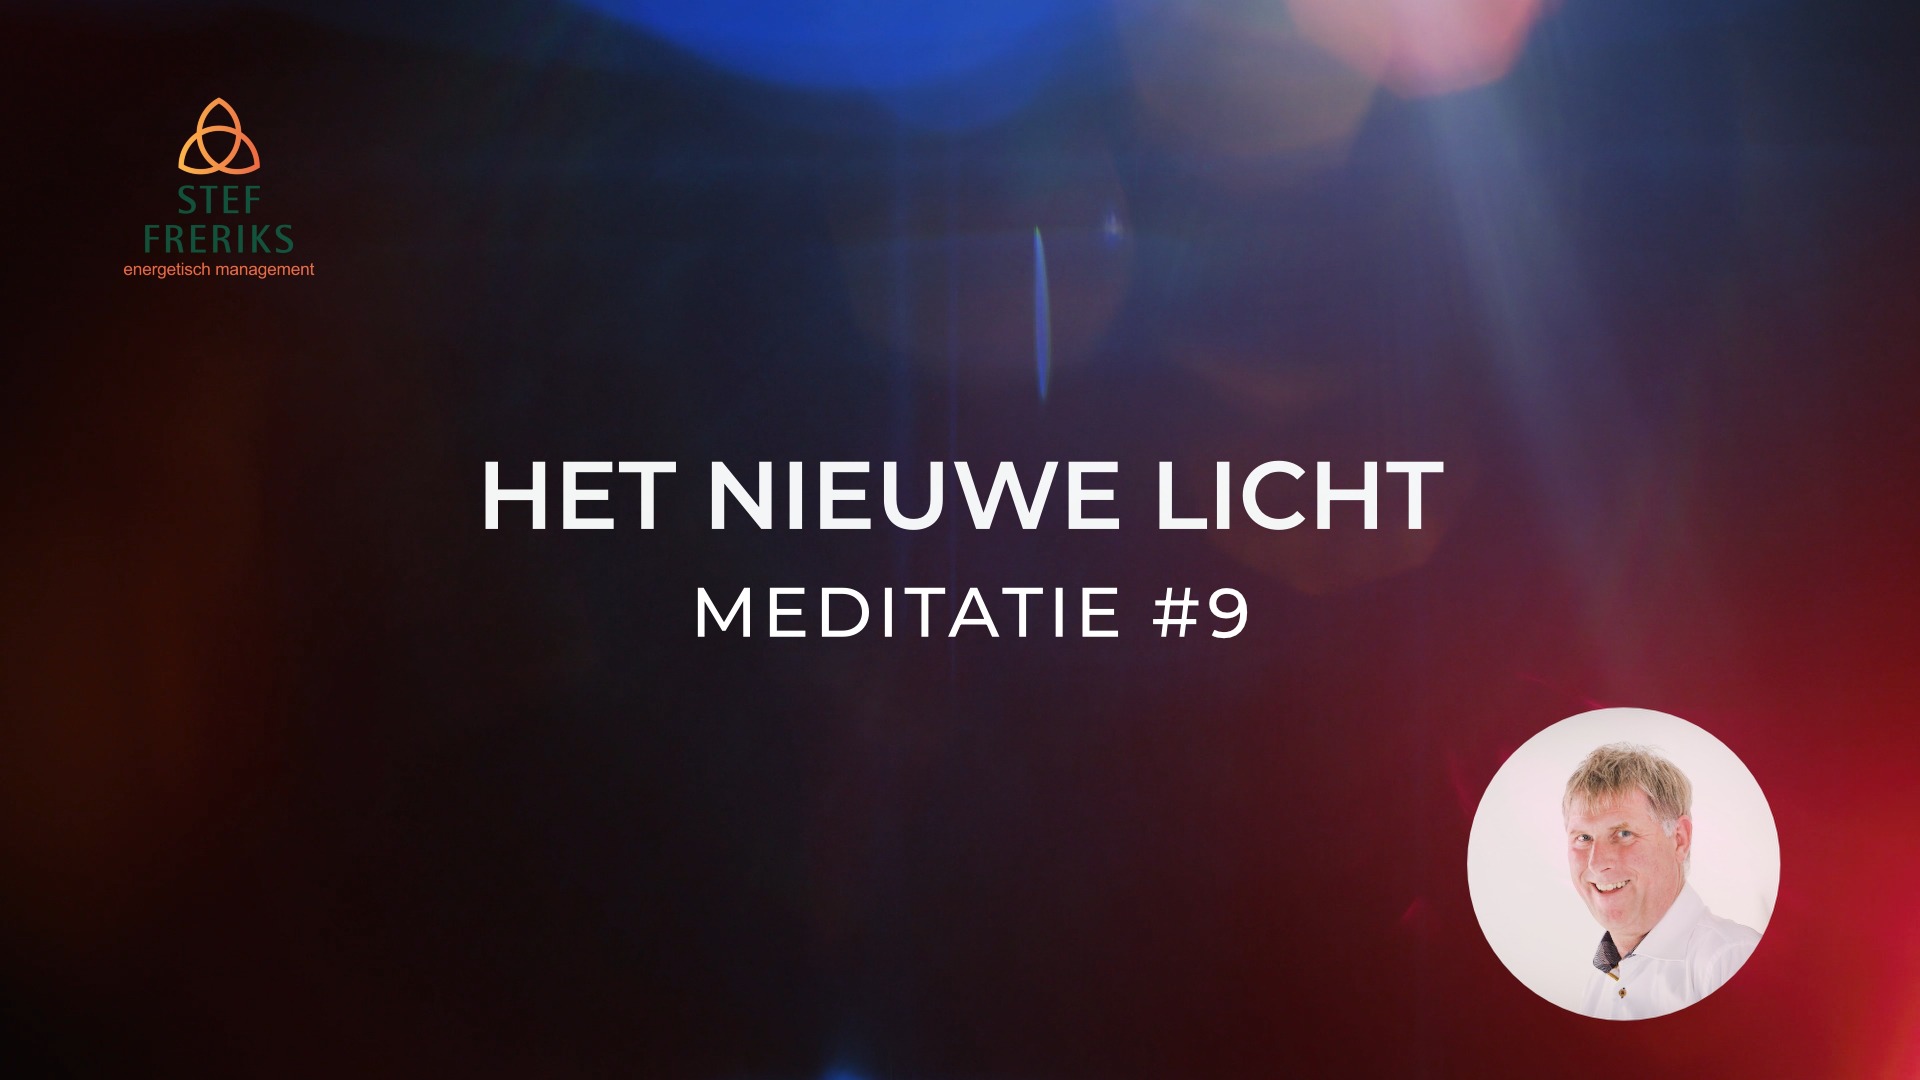 Meditatie #9 uit de serie Het Nieuwe Licht: Los van het Oude